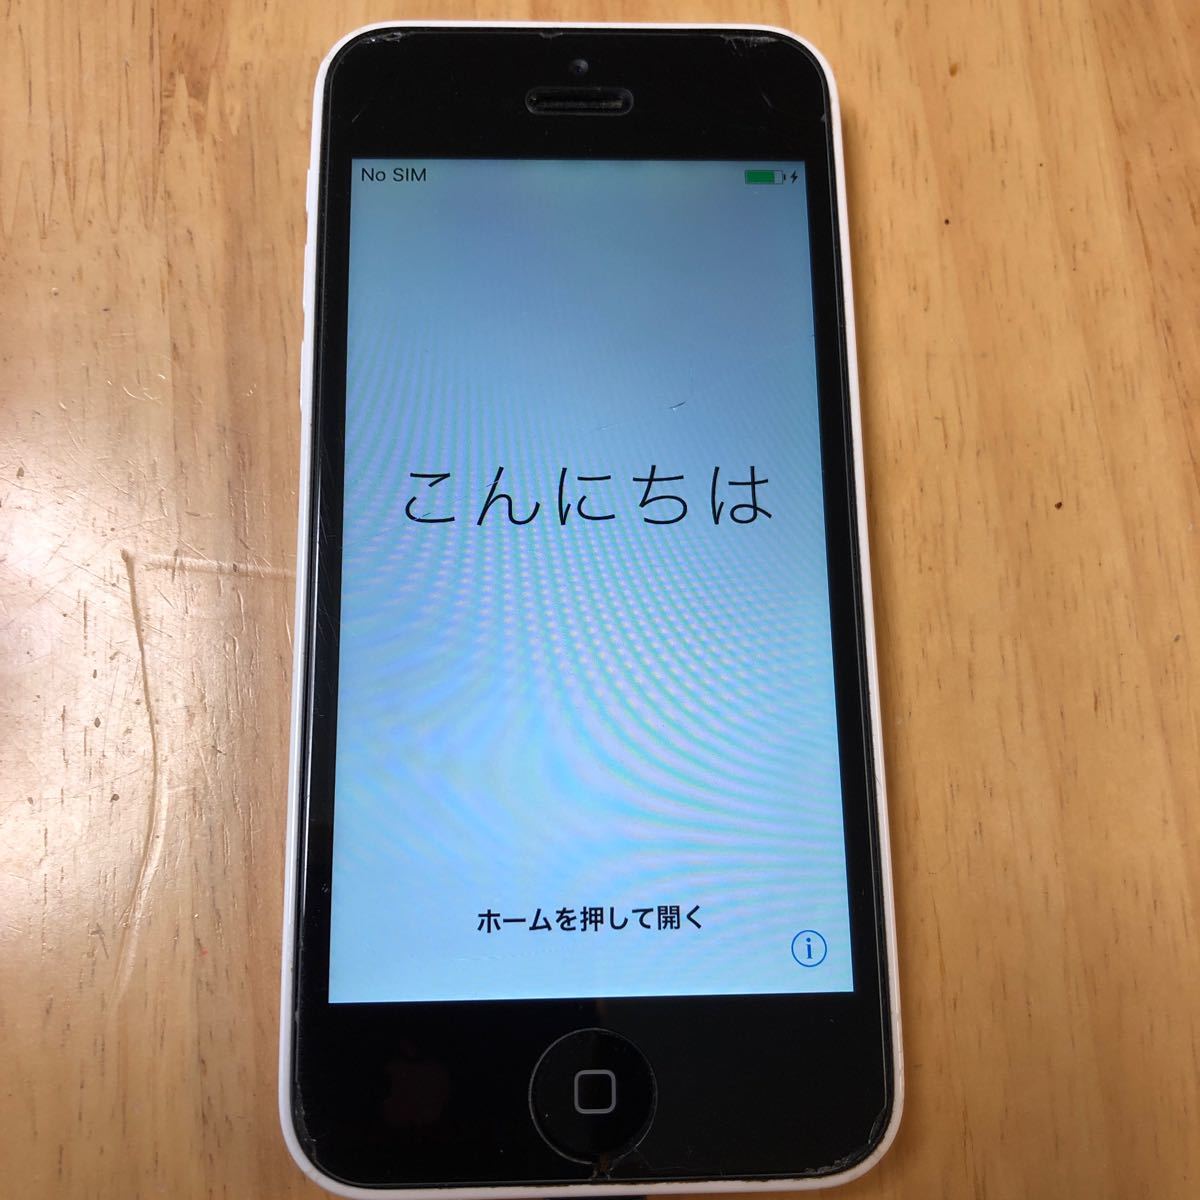 iPhone 5c White 16 GB docomo